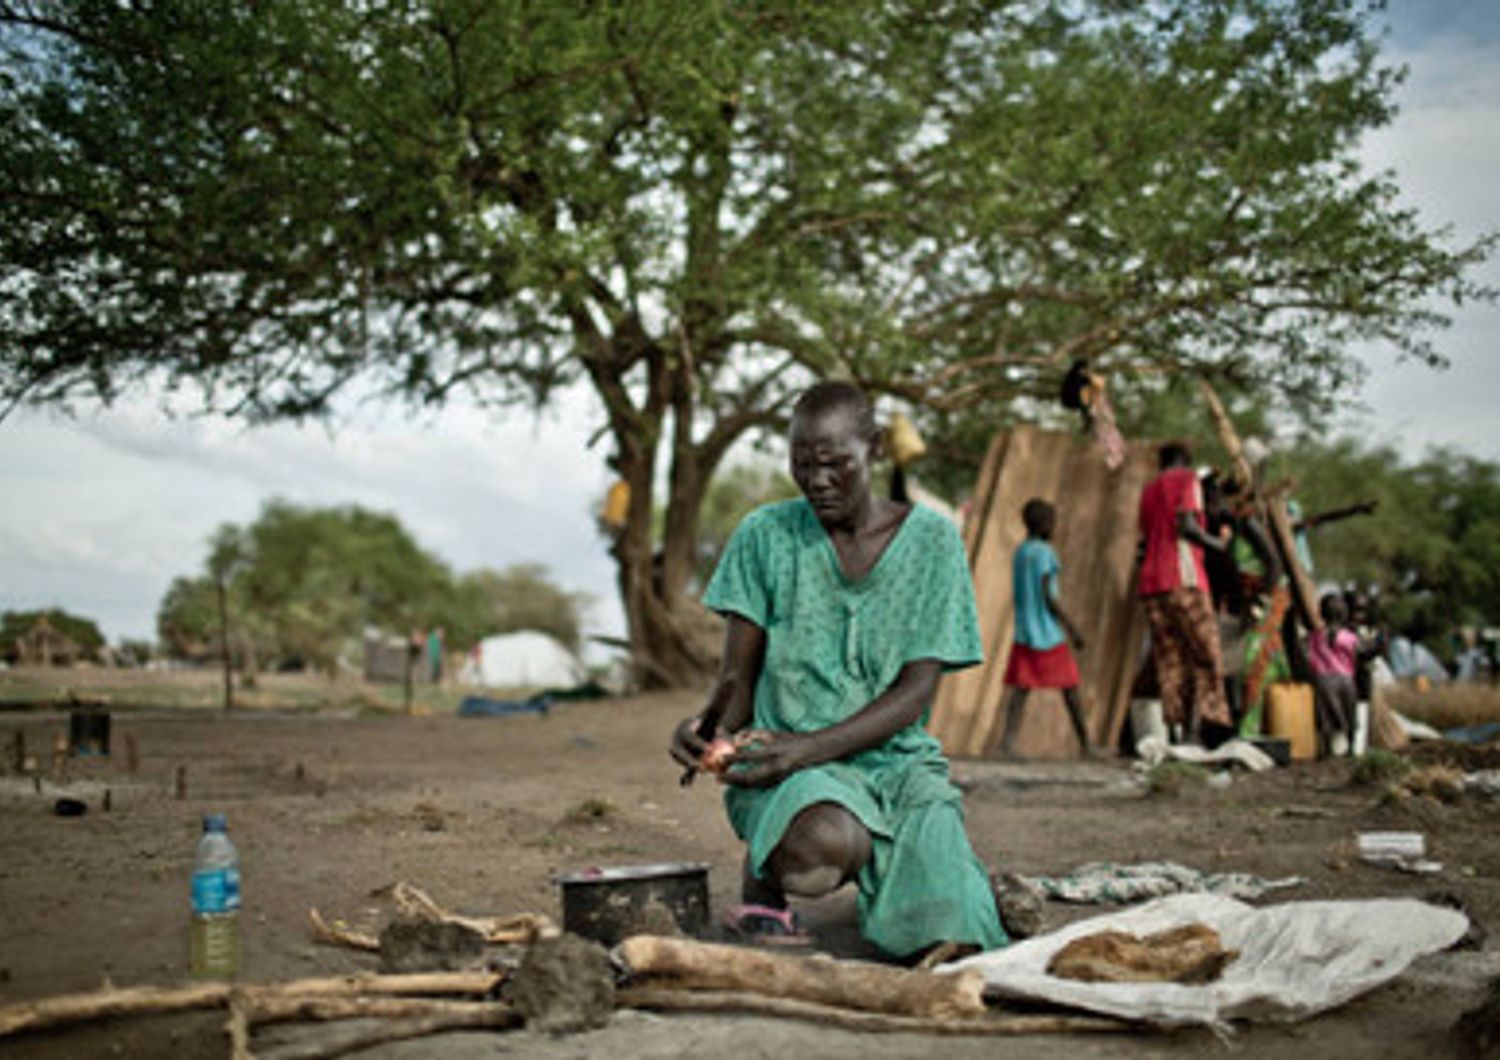 Sud Sudan fame poverta' combattimenti